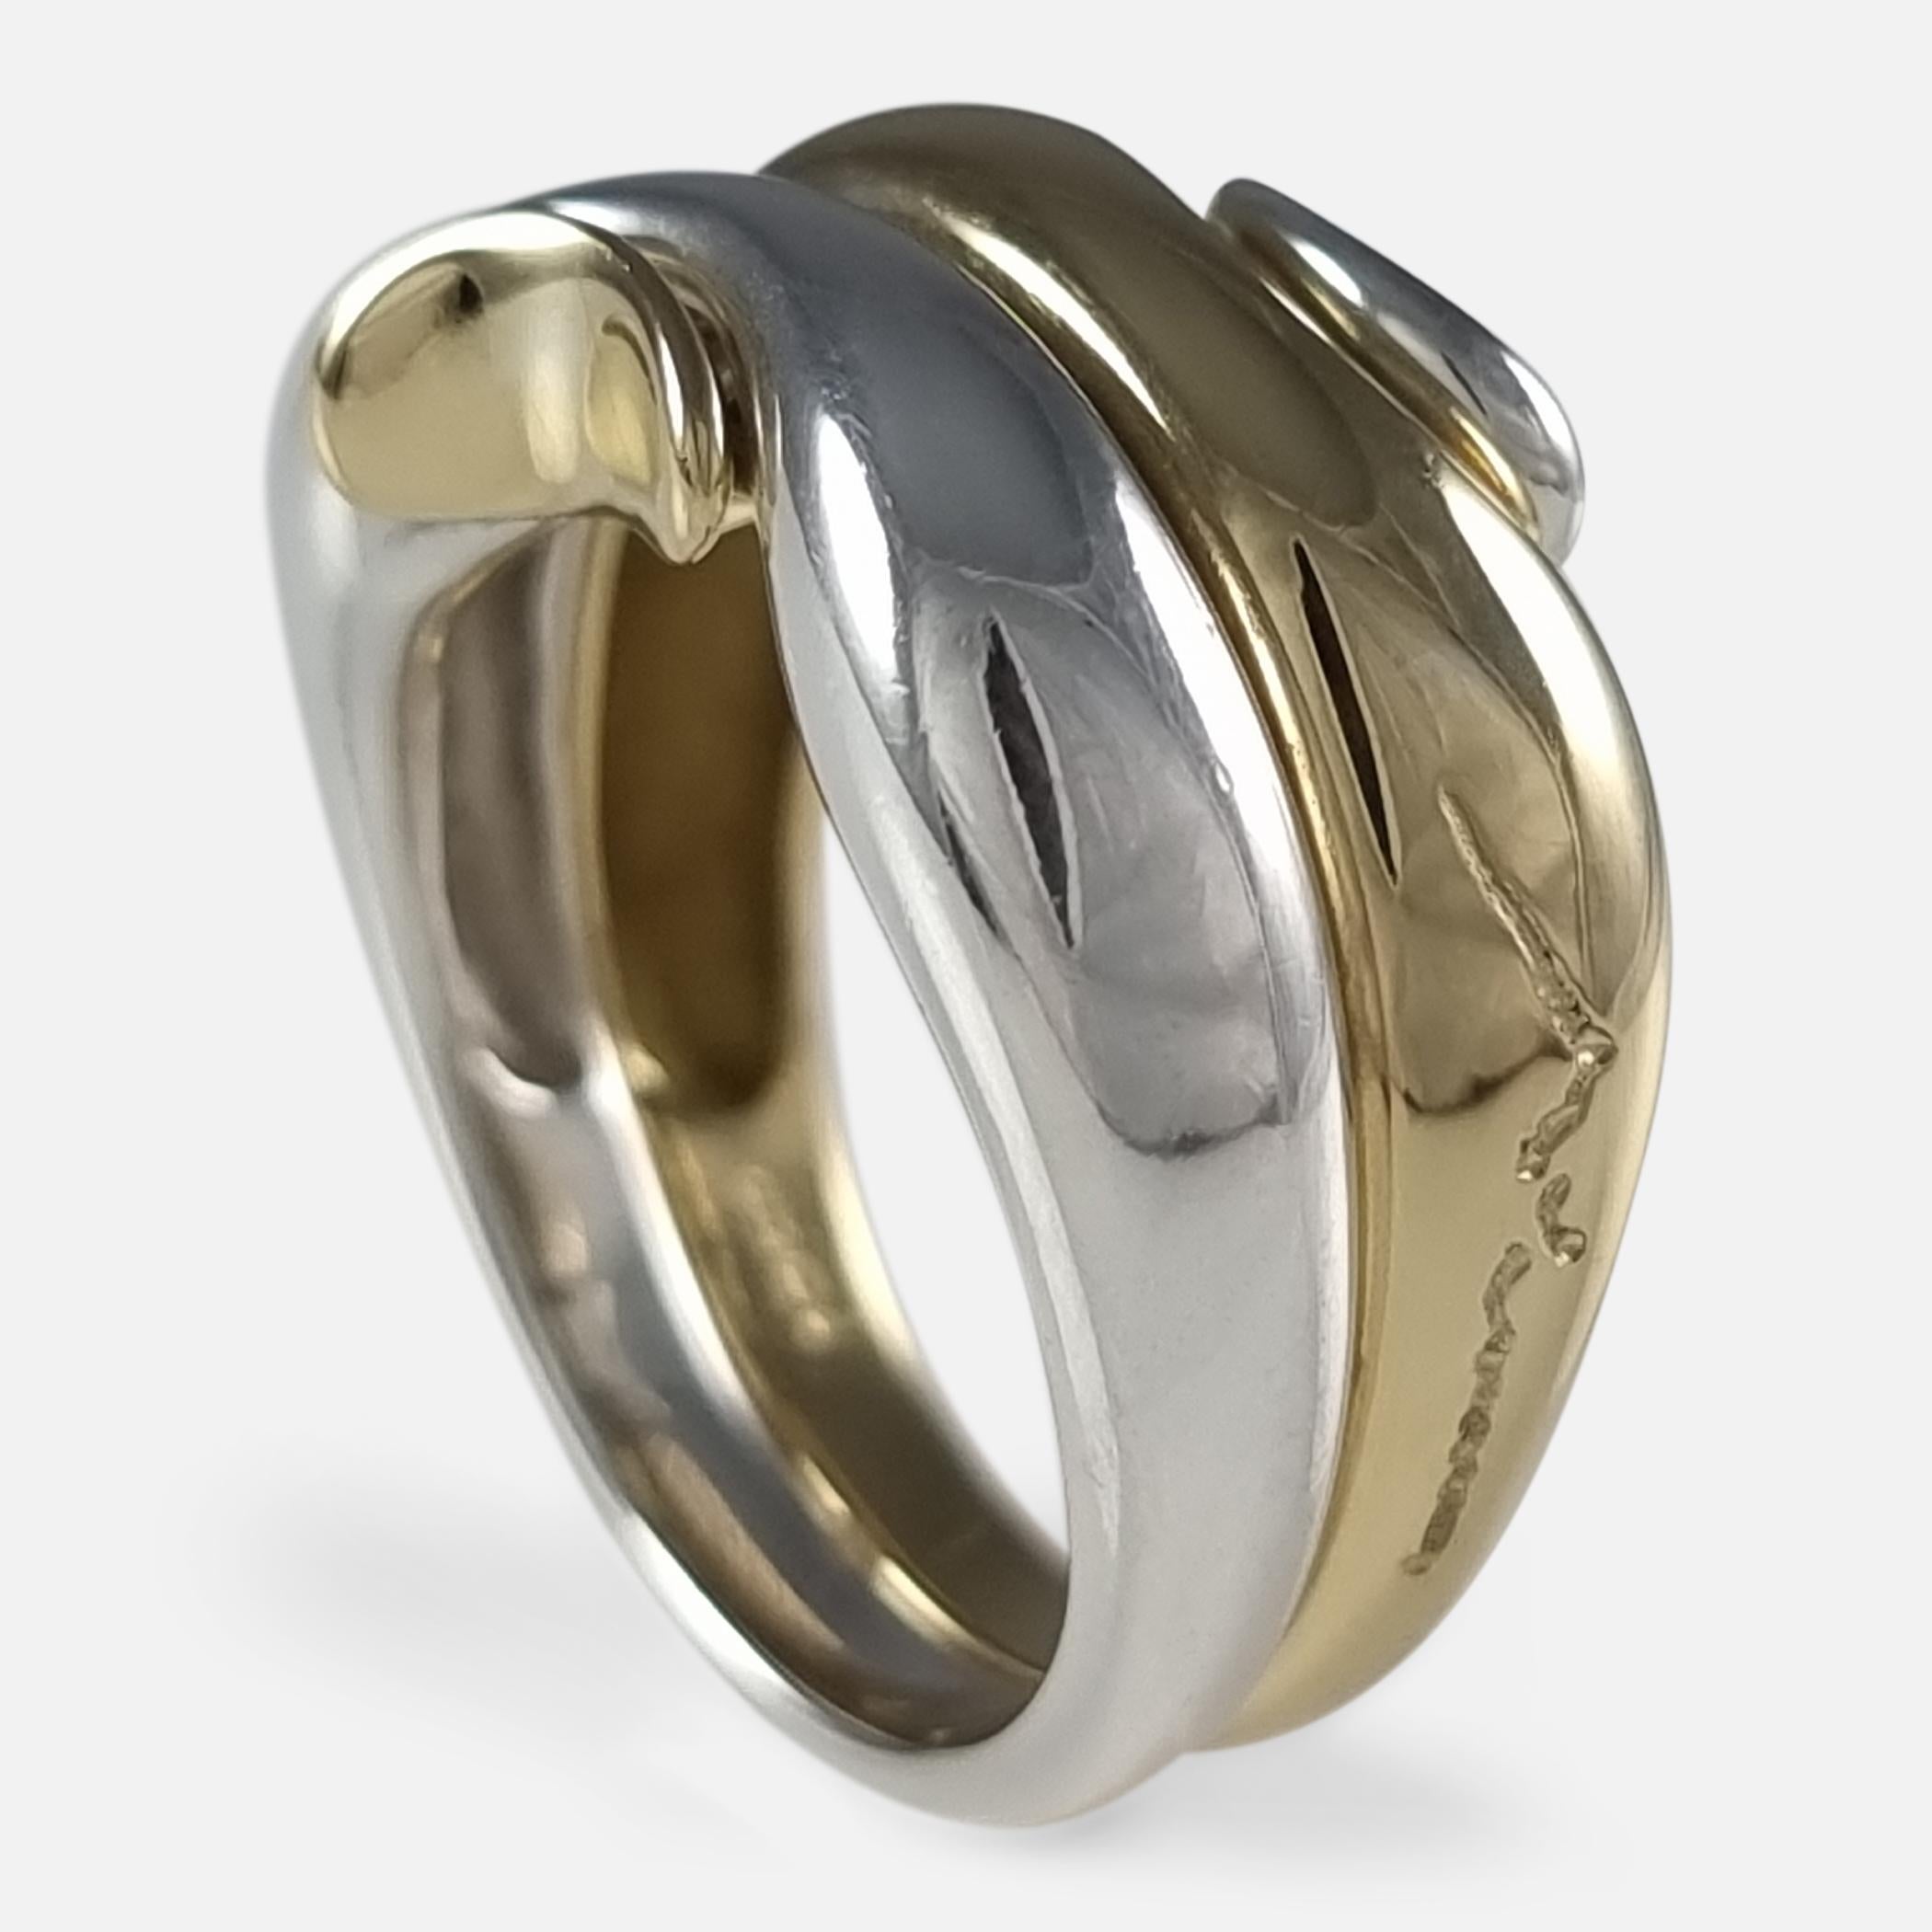 George Jensen 18ct Gold & Silver Ring, Minas Spiridis 12